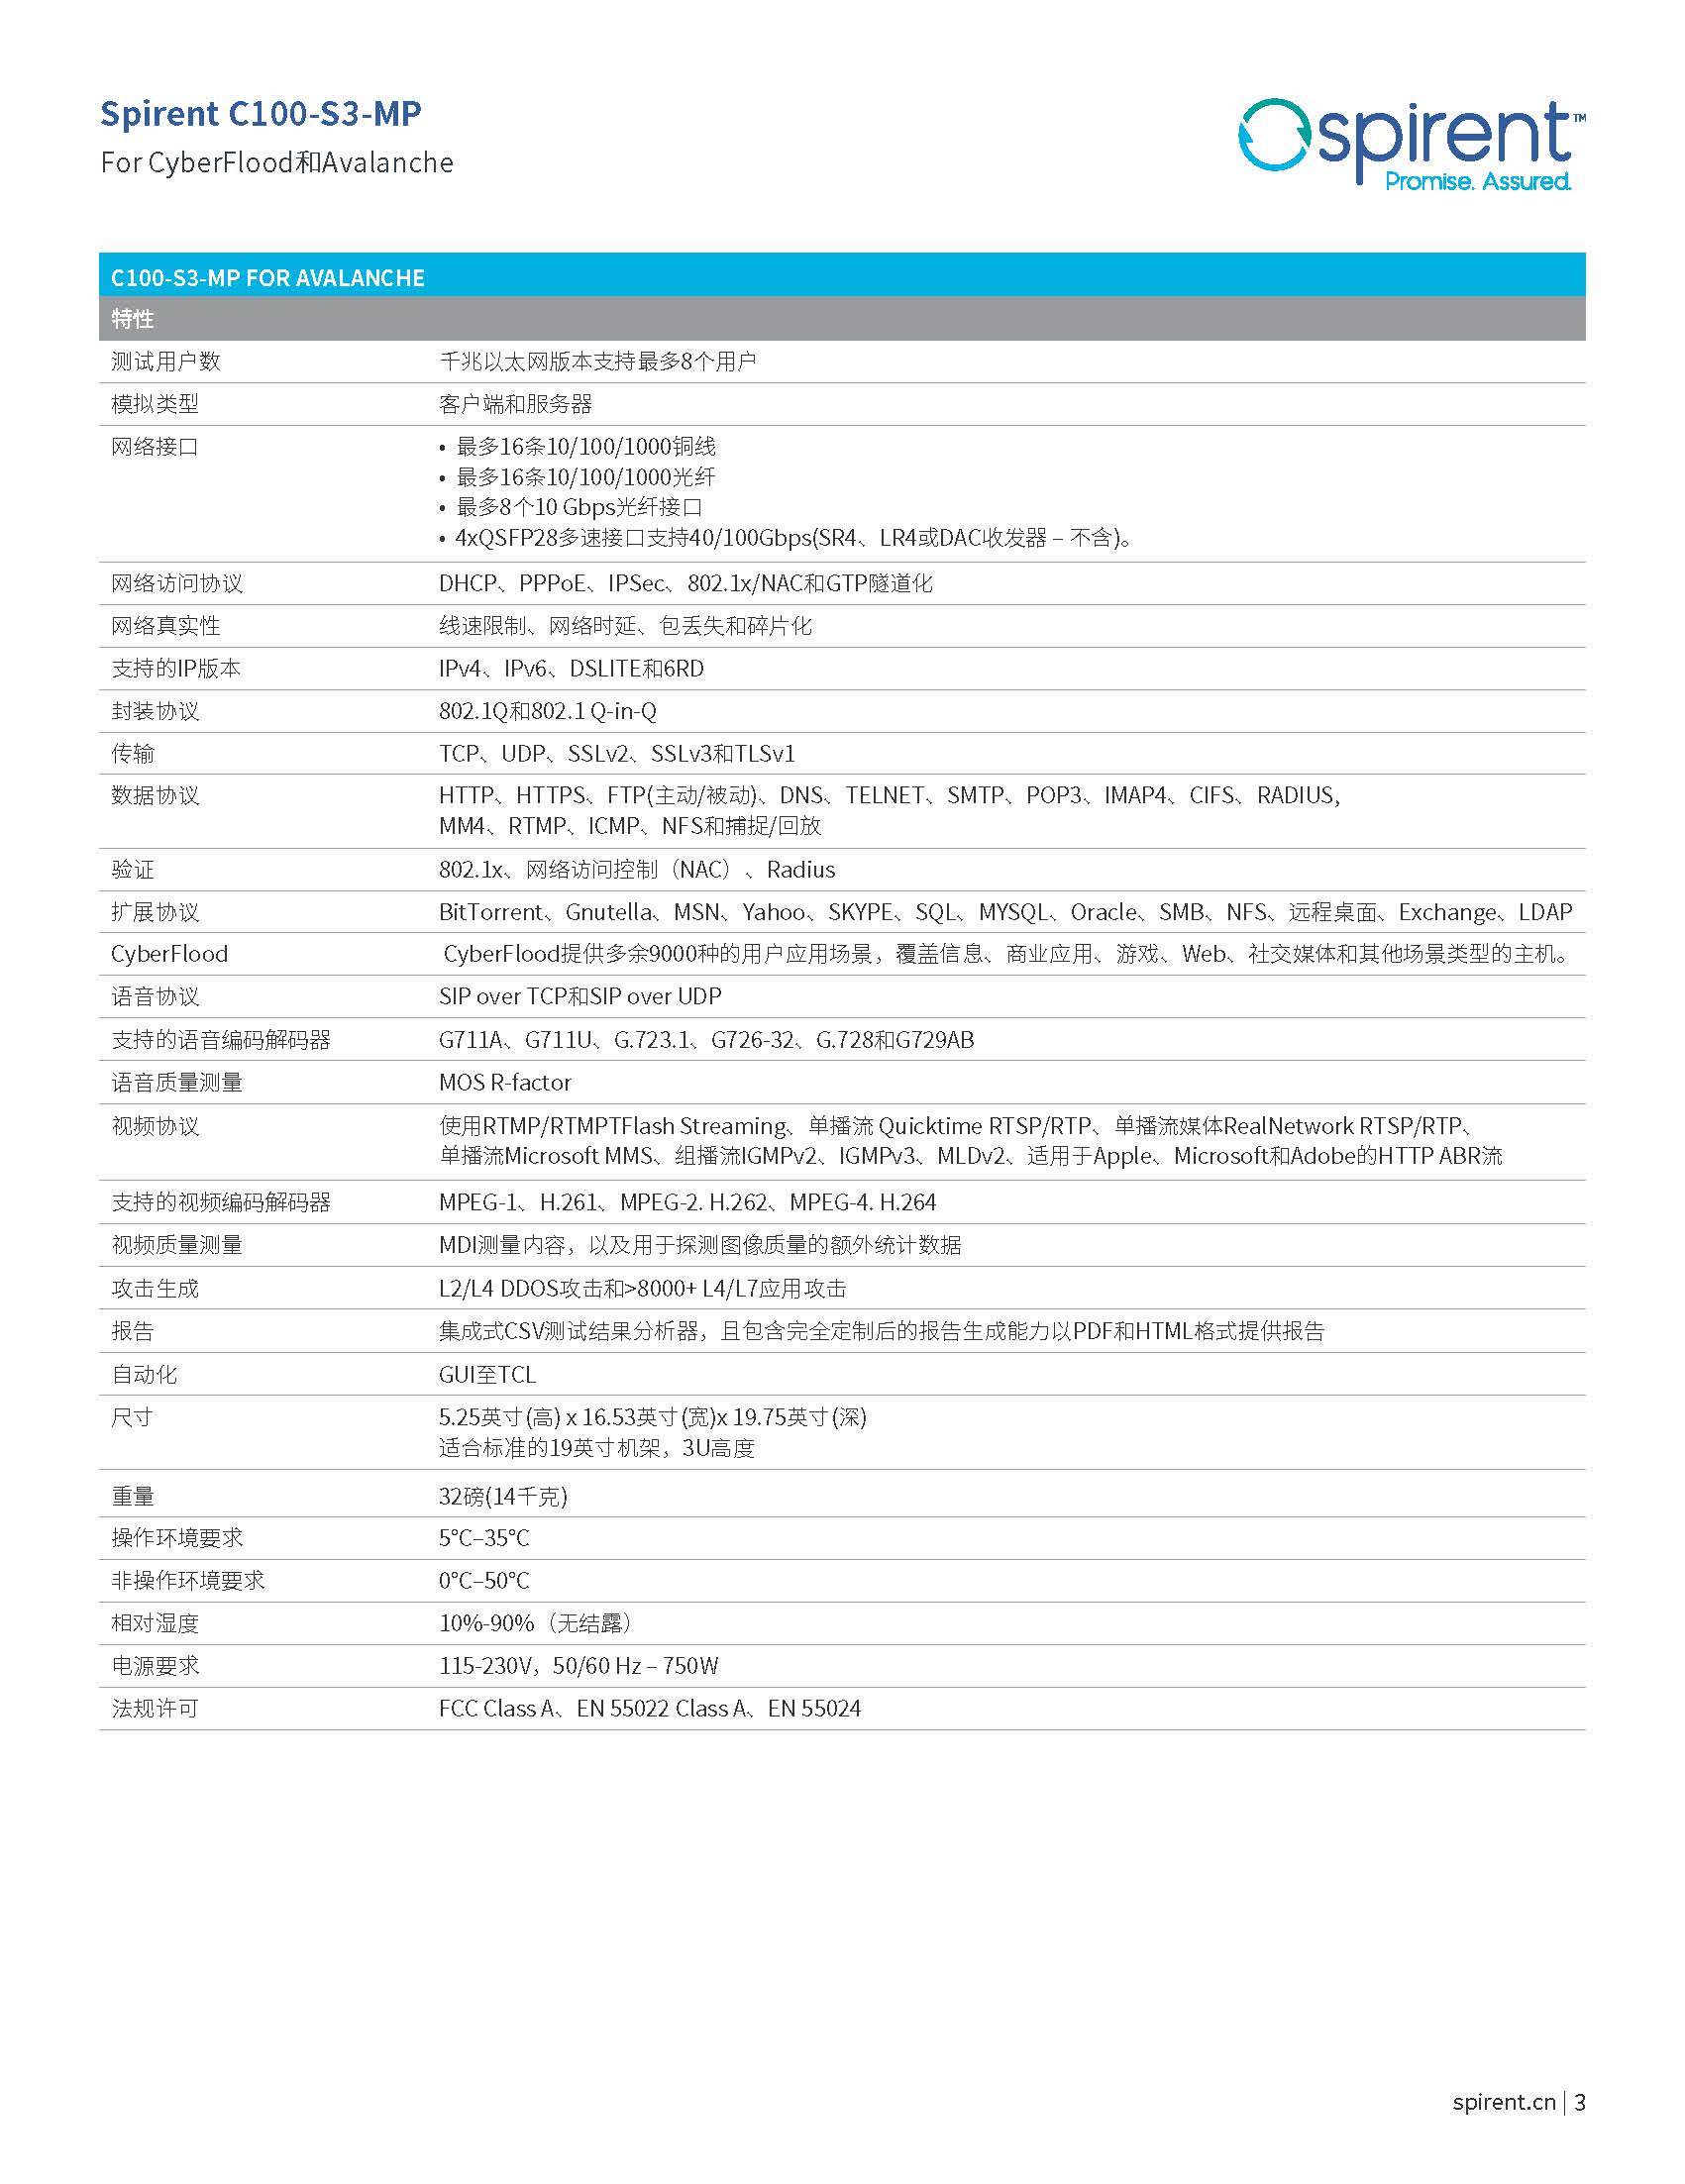 中文更新-23_C100_for_Avalanche_CN_202006(1)_页面_3.jpg